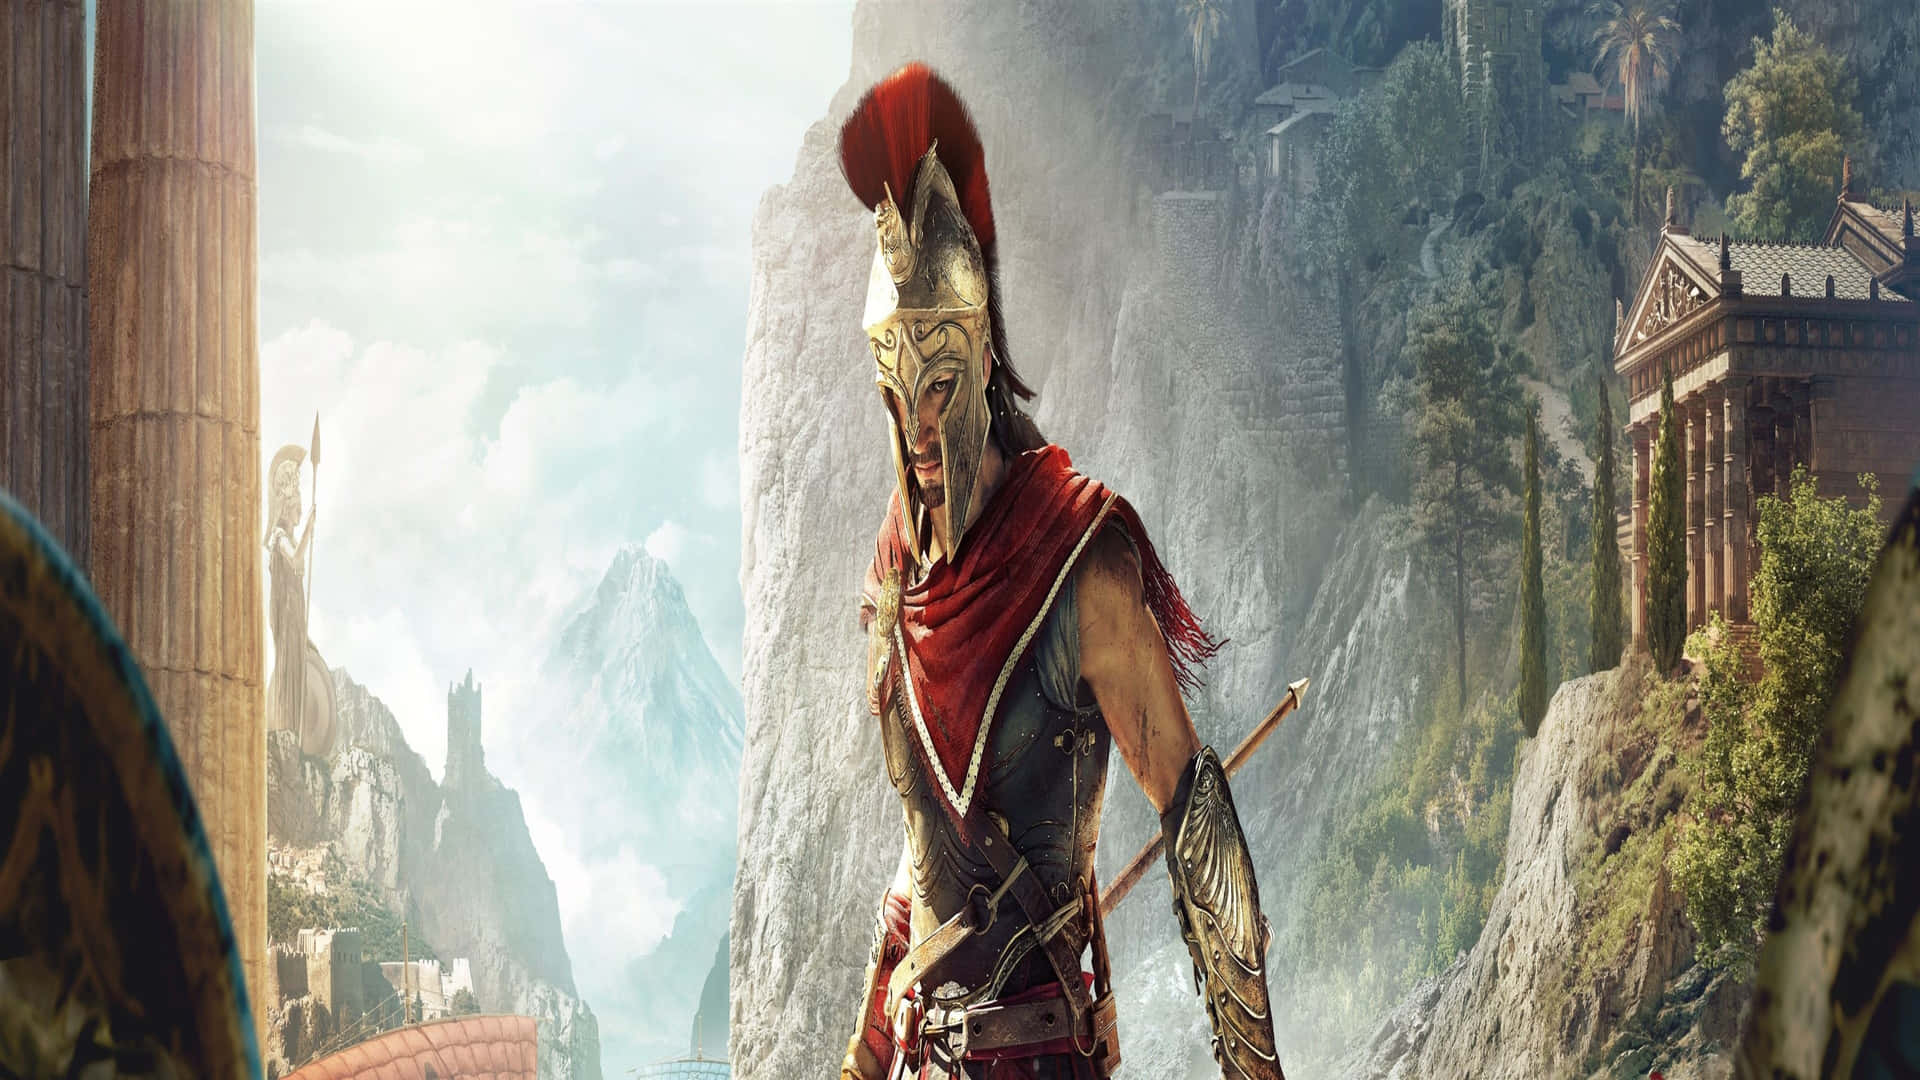 Déjatellevar Por Épicas Aventuras Y Resuelve Viejas Rencillas En Assassin's Creed Odyssey En 4k.